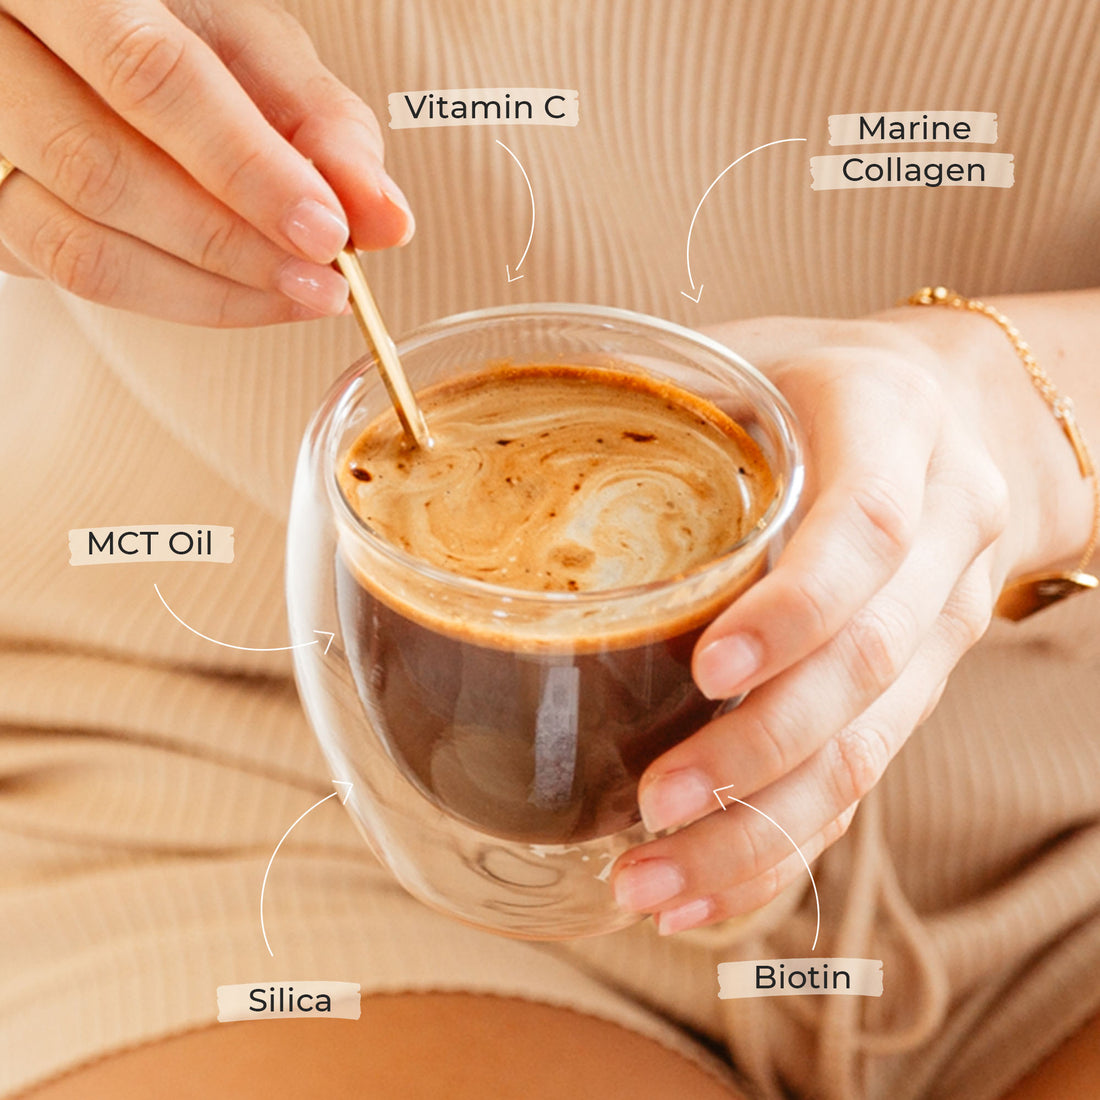 Before you speak Glow Collagen Coffee - Mocha (30 serves)